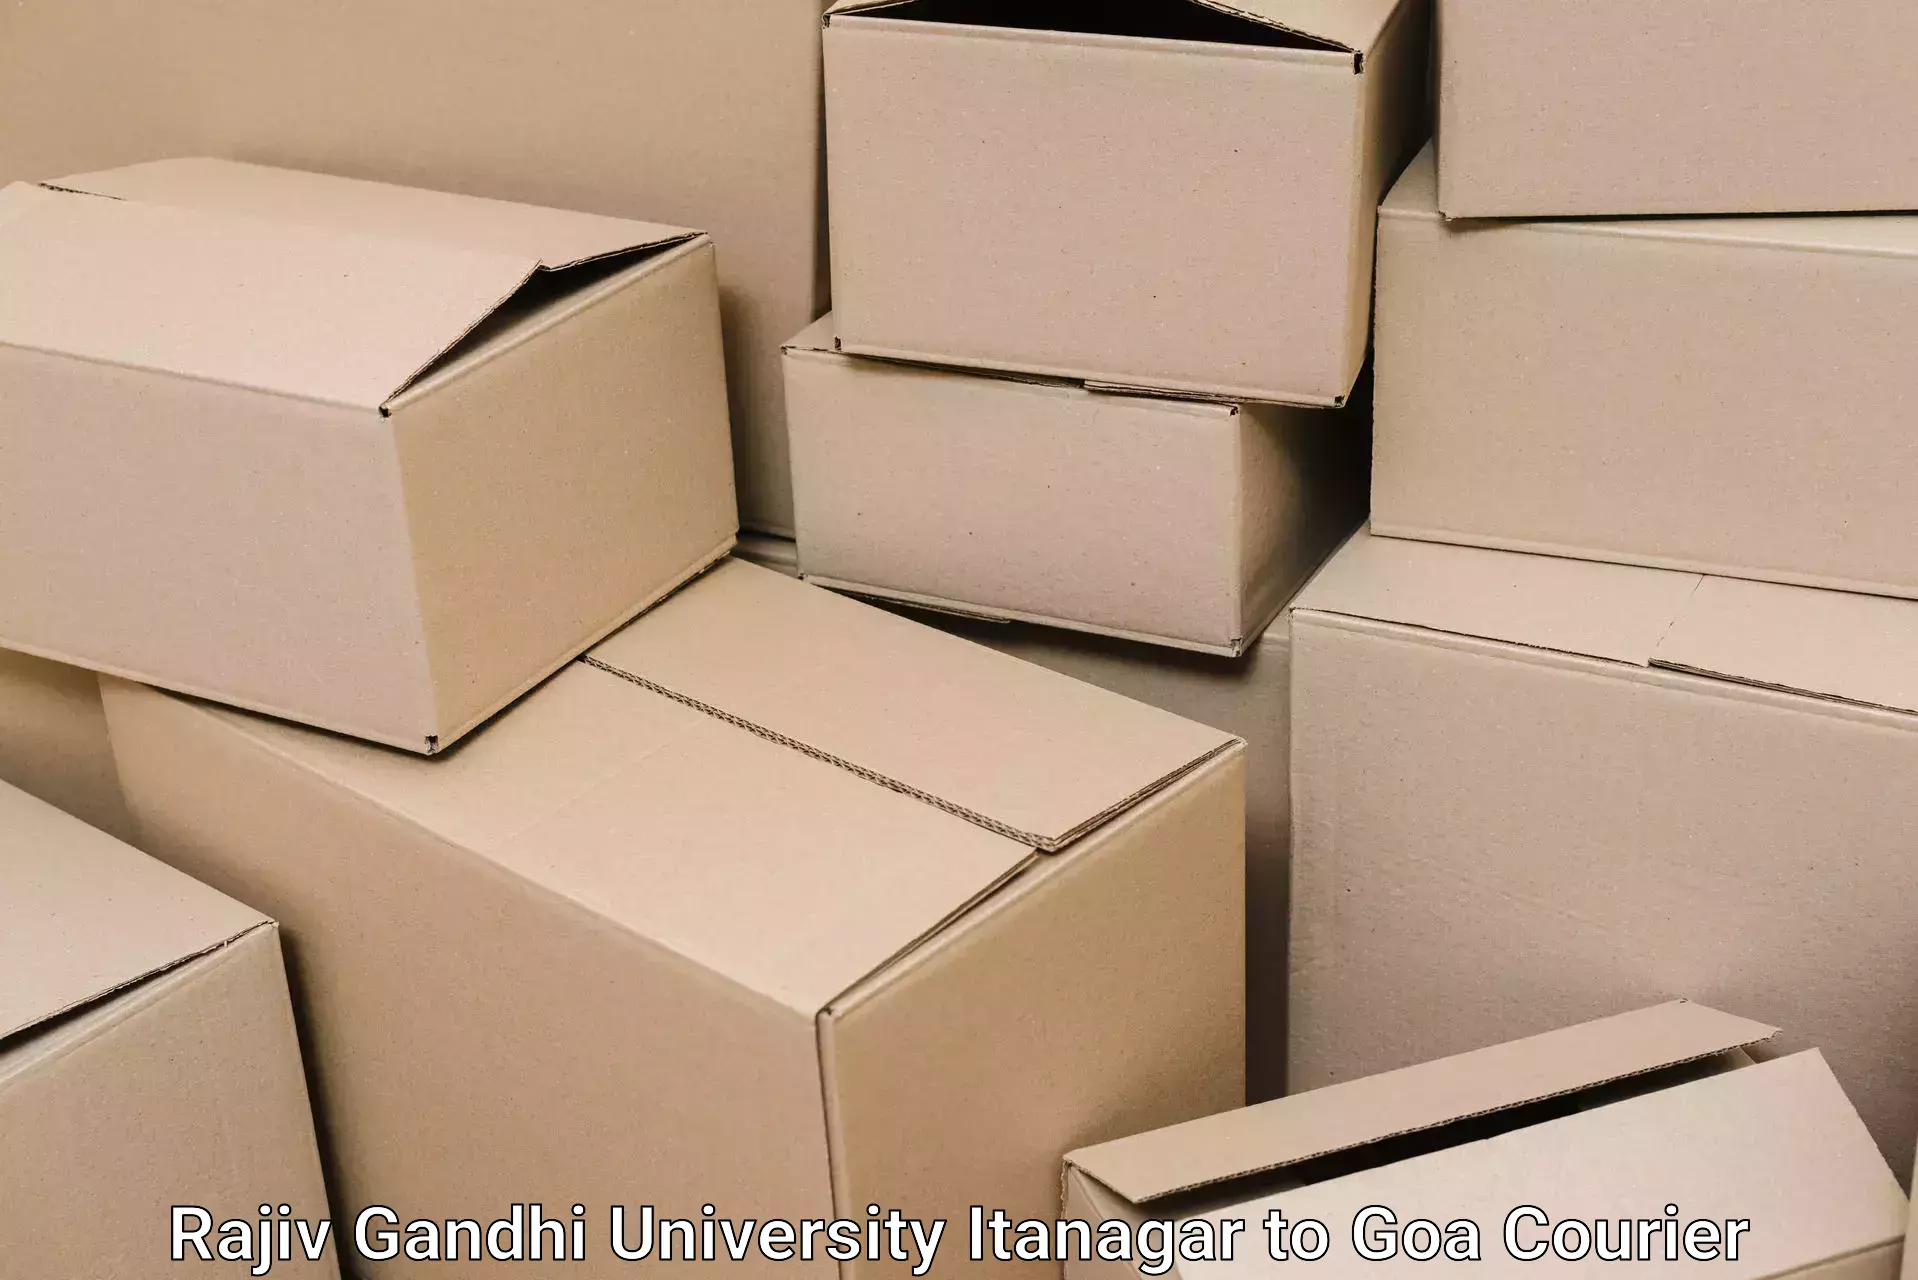 Furniture moving plans Rajiv Gandhi University Itanagar to Goa University